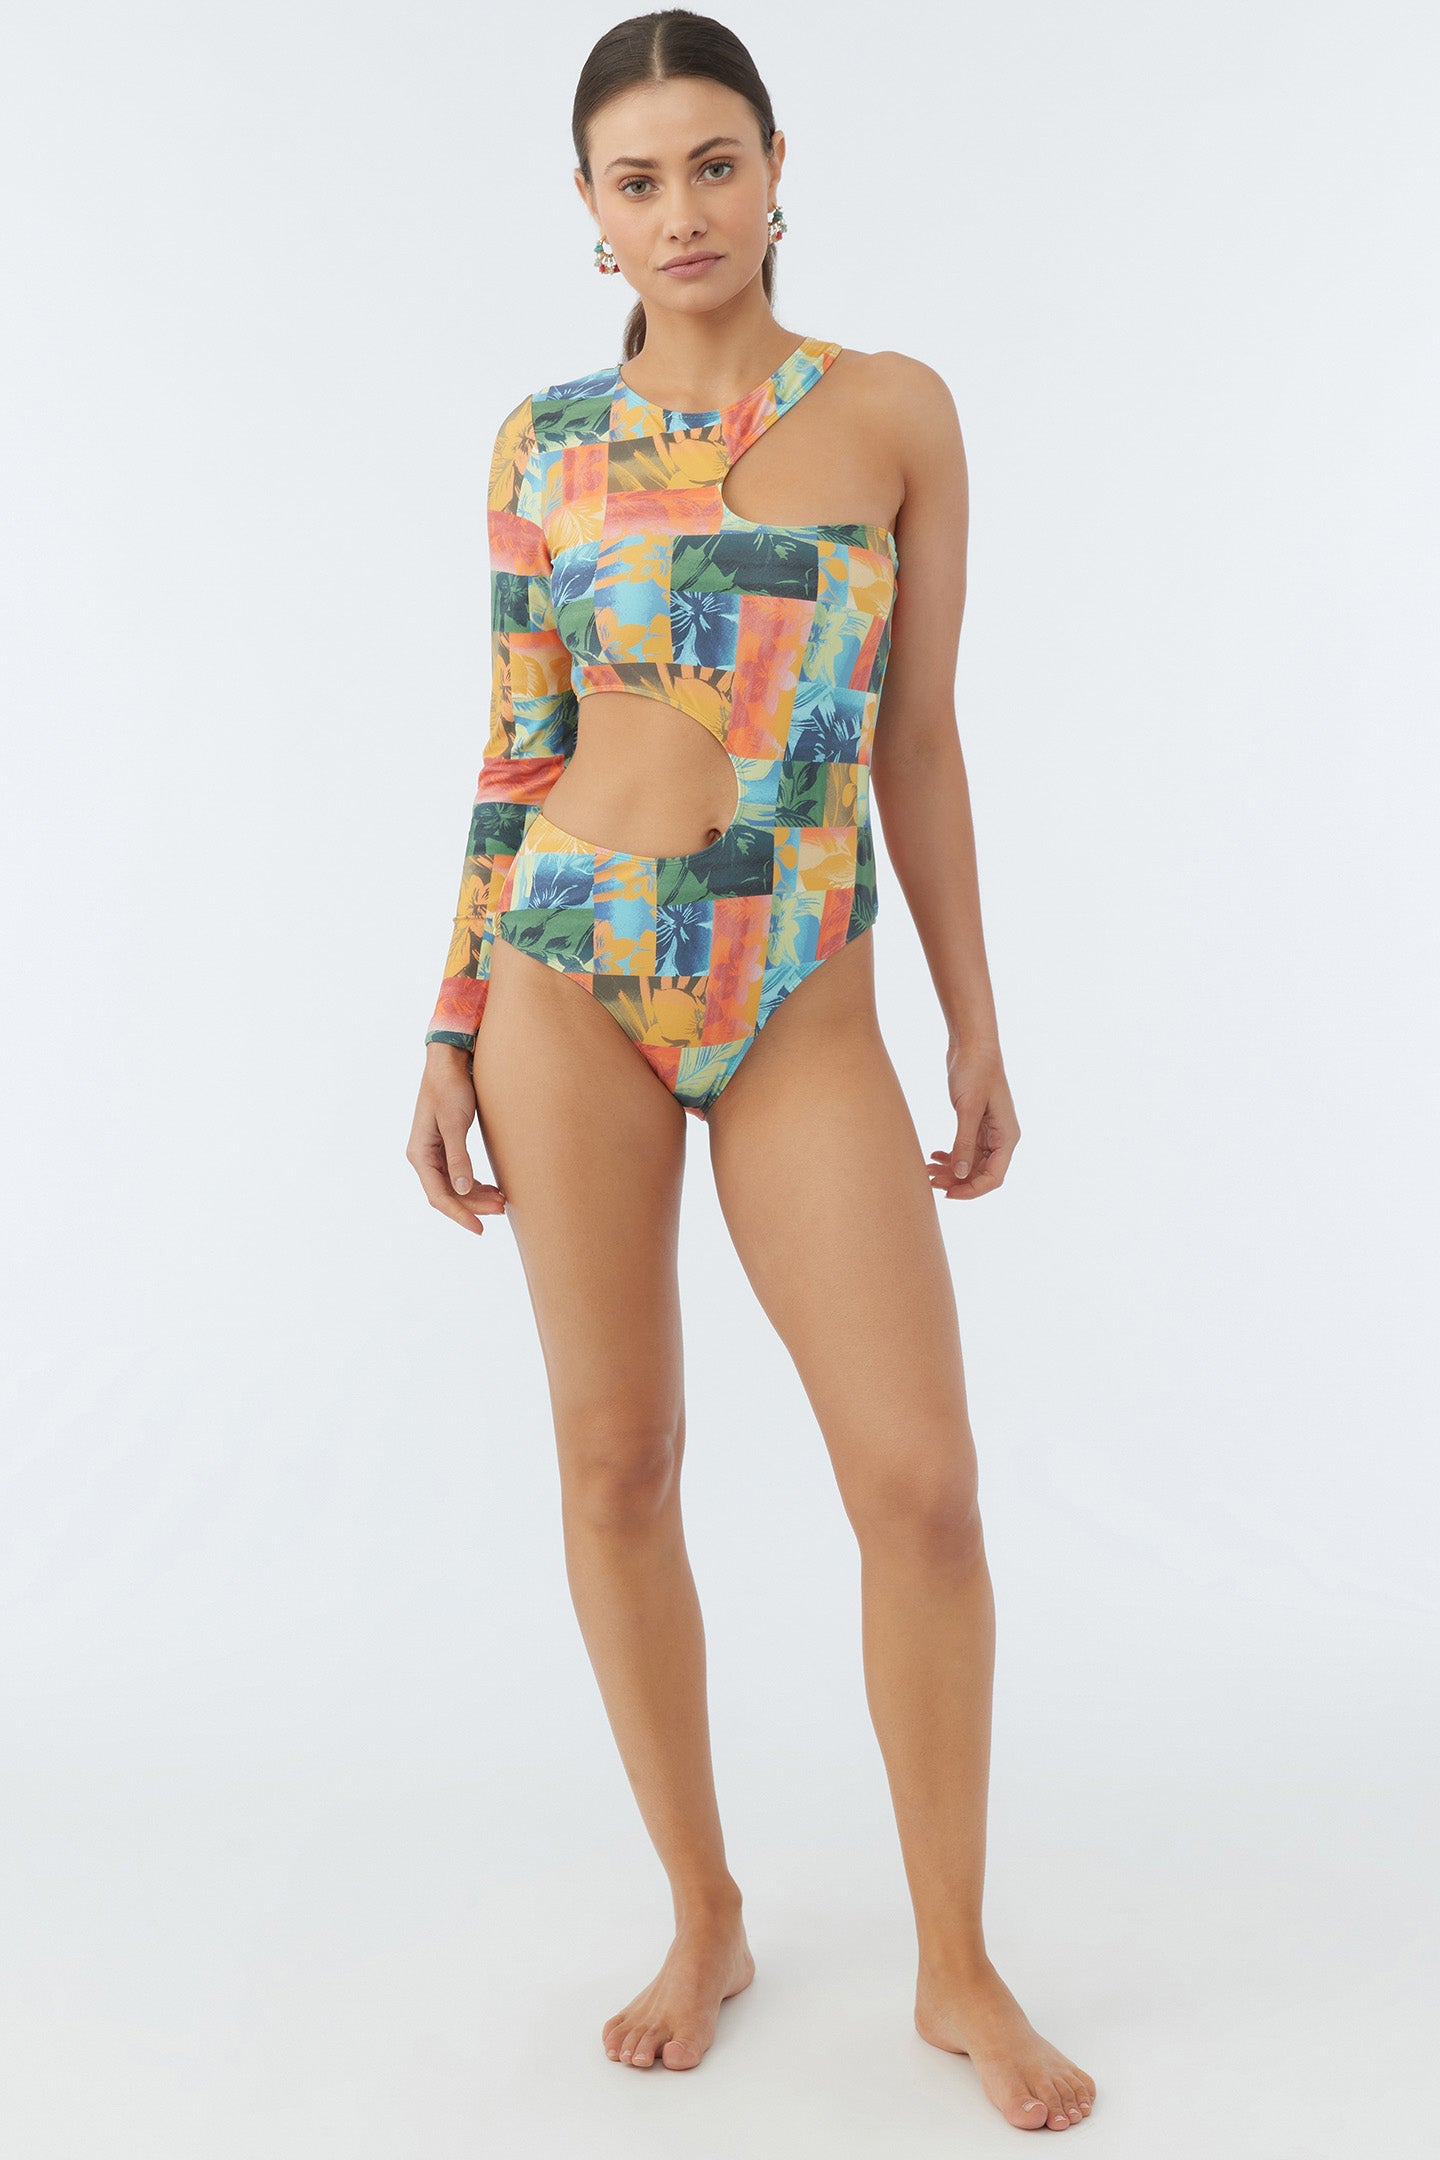 Susie Floral Tofino Surf Suit - Multi Colored